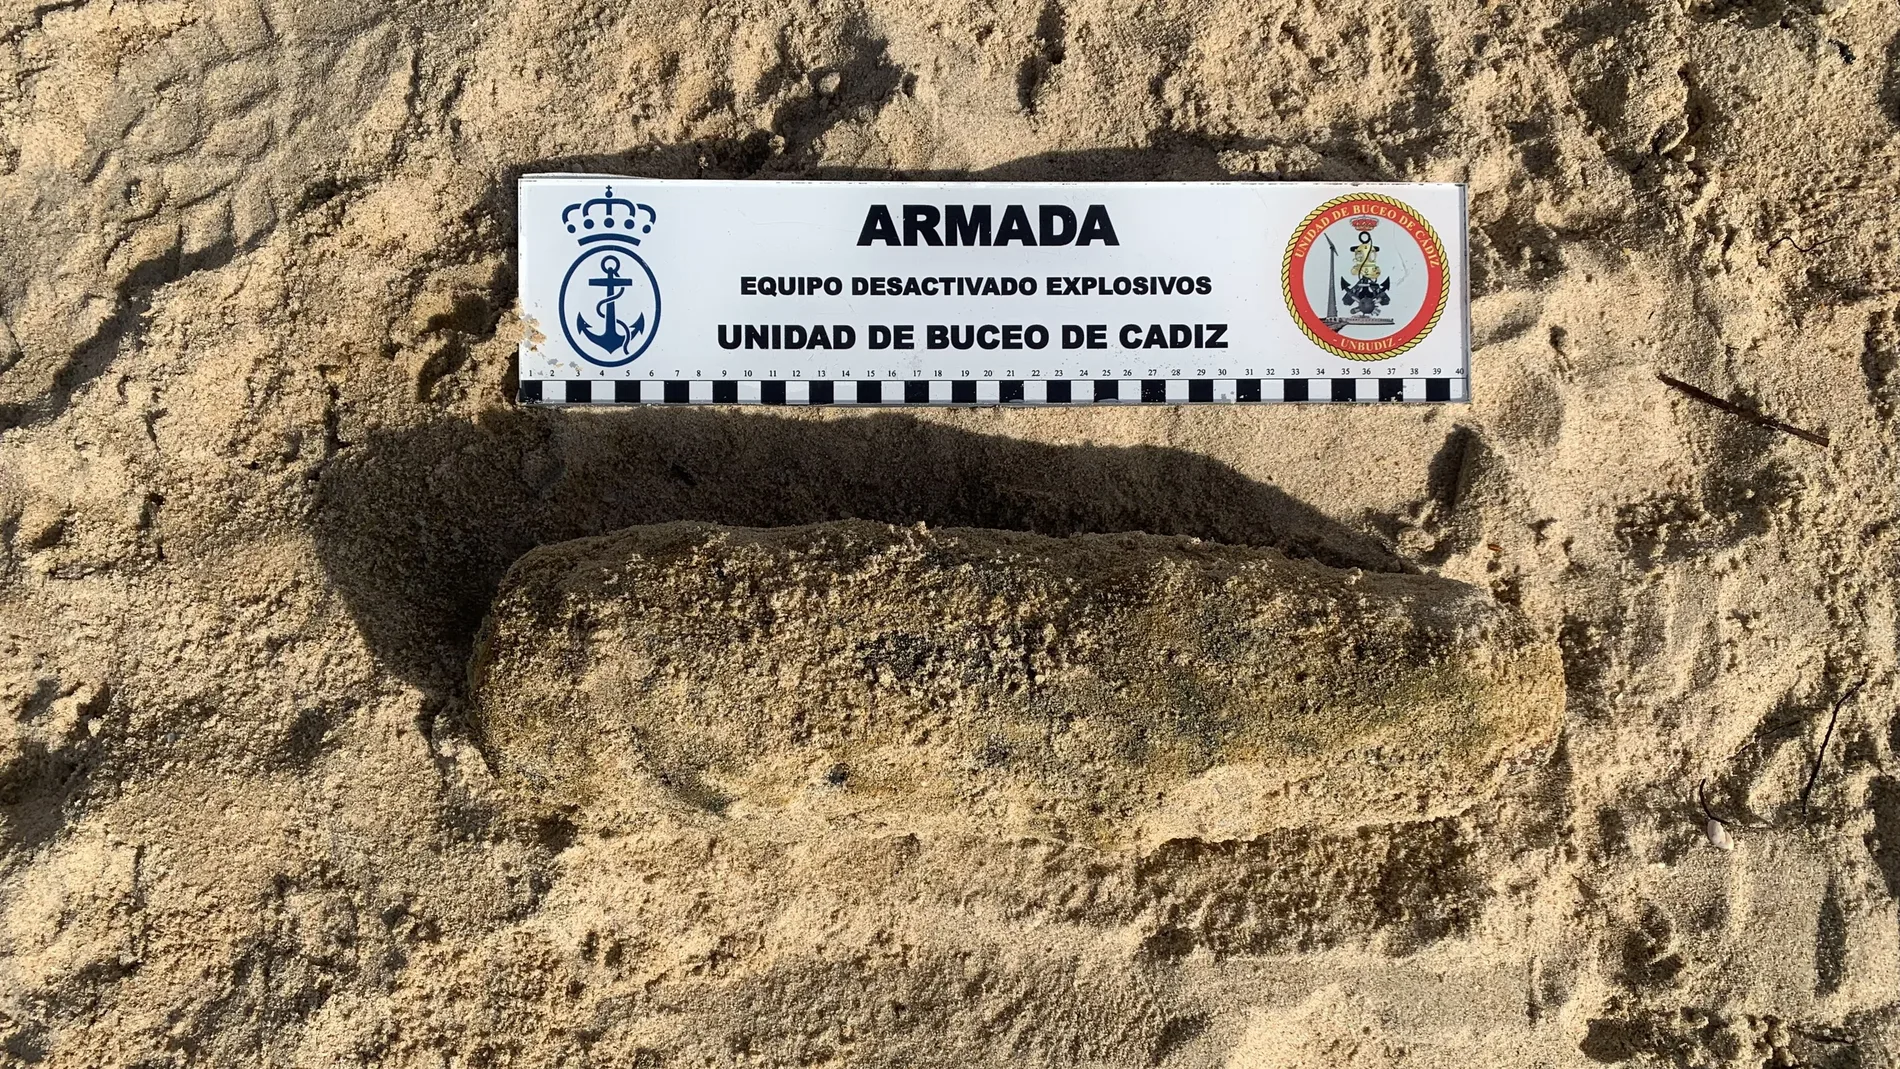 Proyectil encontrado en la playa de Sancti Petri, en Chiclana (Cádiz). ARMADA ESPAÑOLA